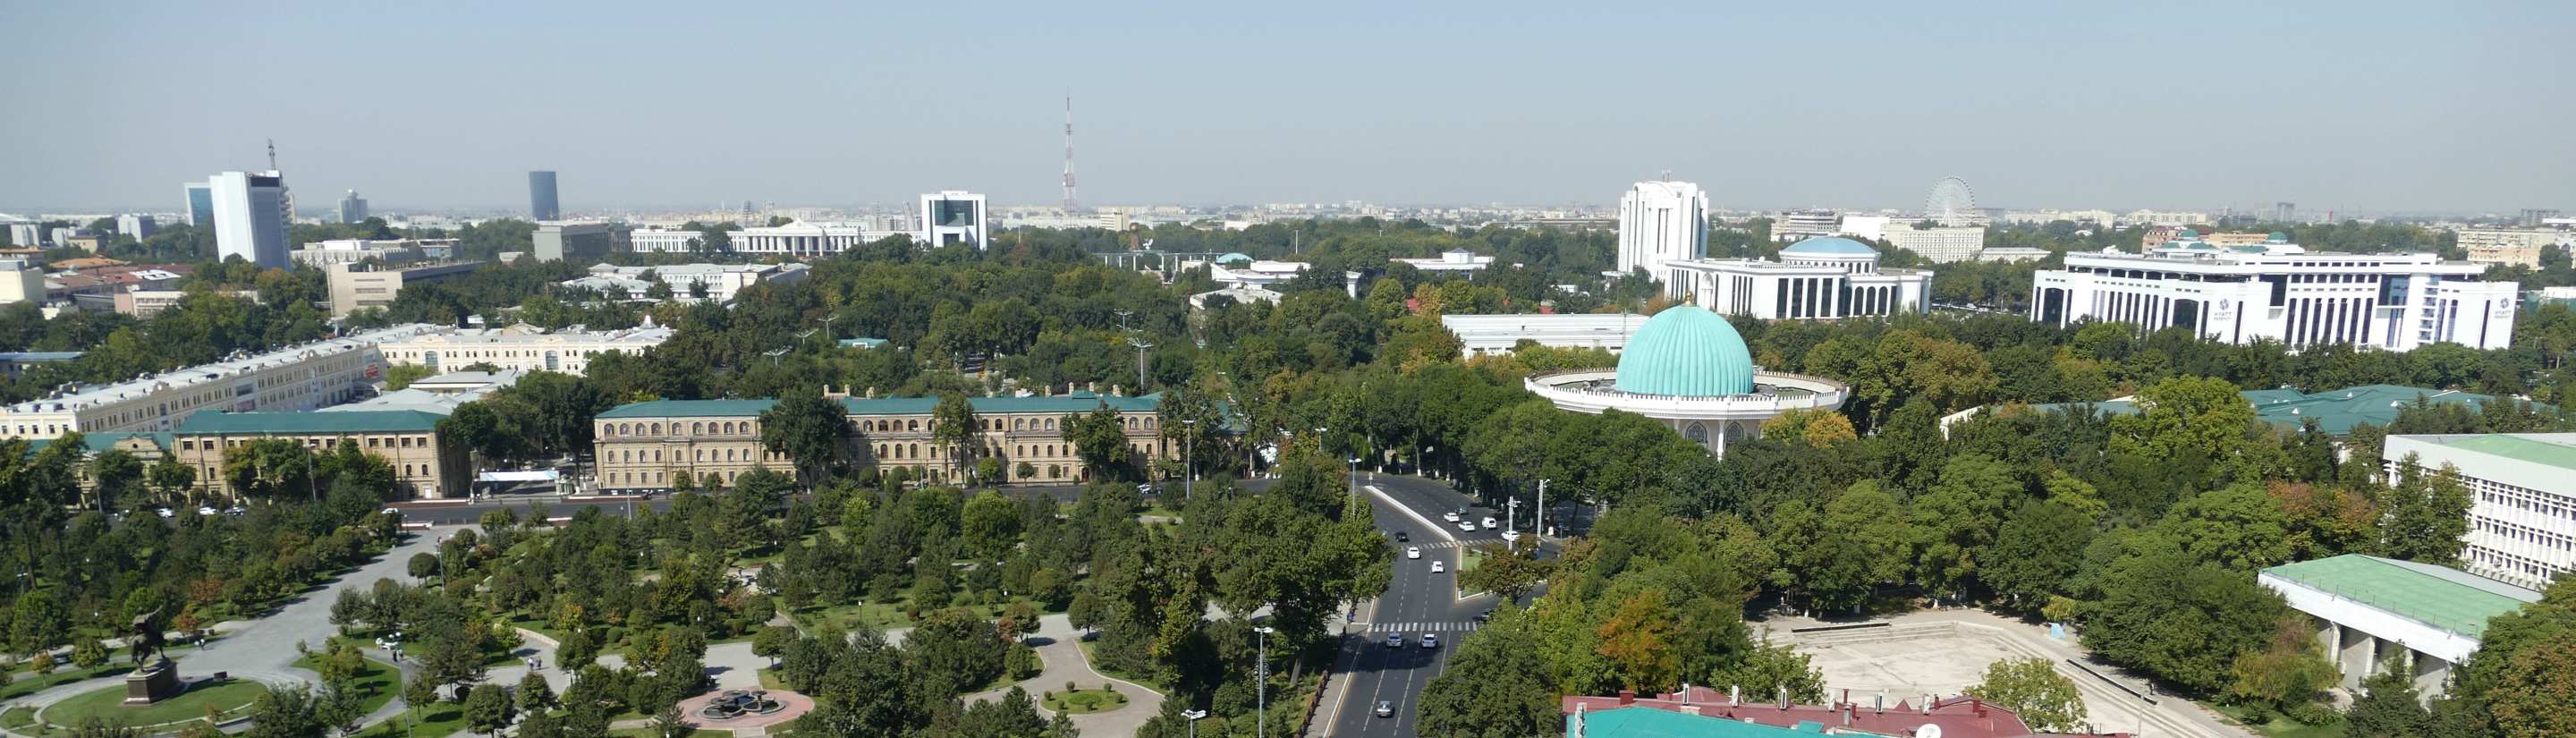 Usbekistans Hauptstadt Taschkent